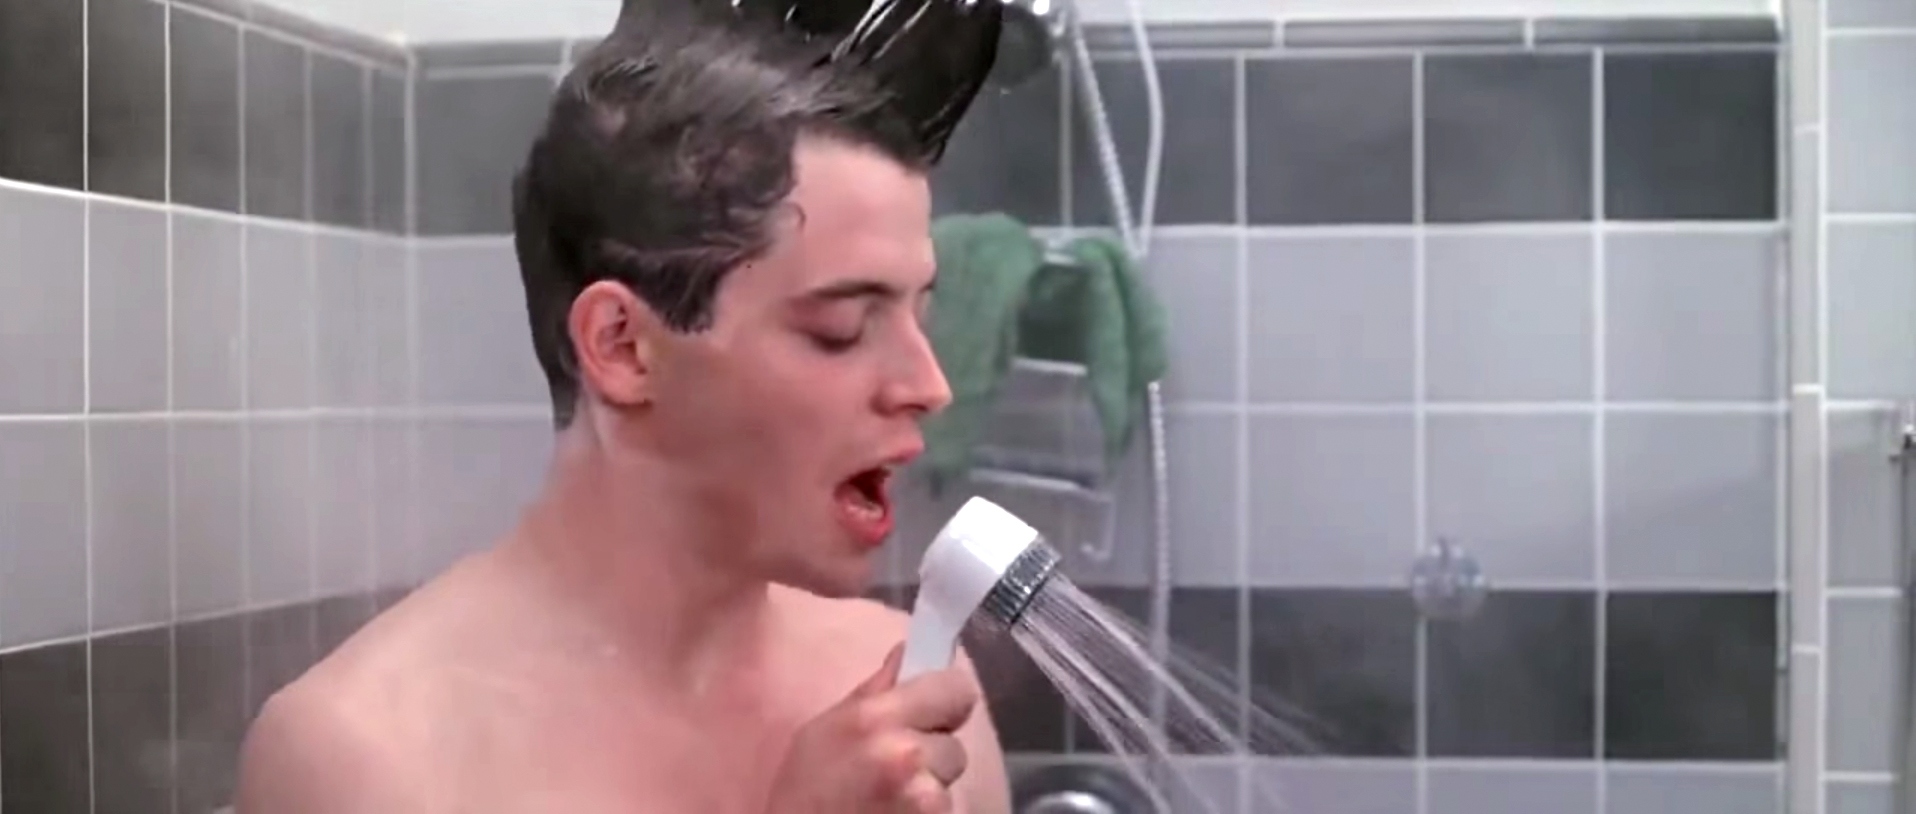 daniel constanza recommends Can You Masturbate With Shampoo